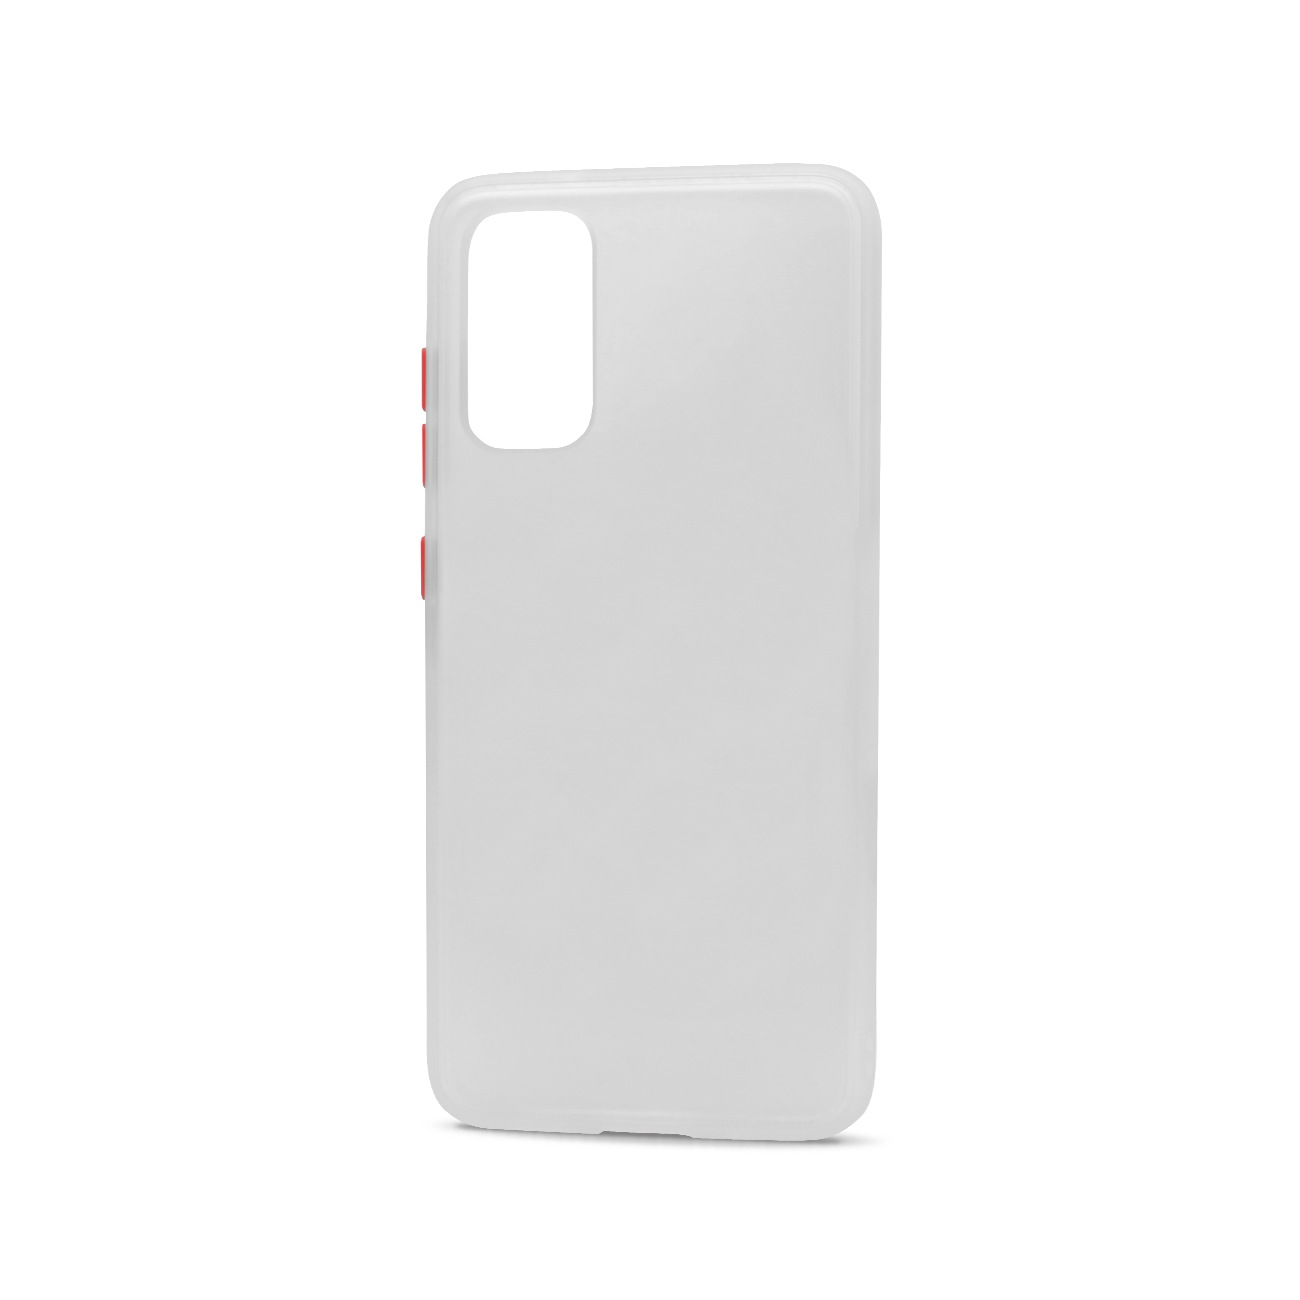 Samsung Galaxy S20 (6.2in) Slim Matte Hybrid Bumper Case (White White)